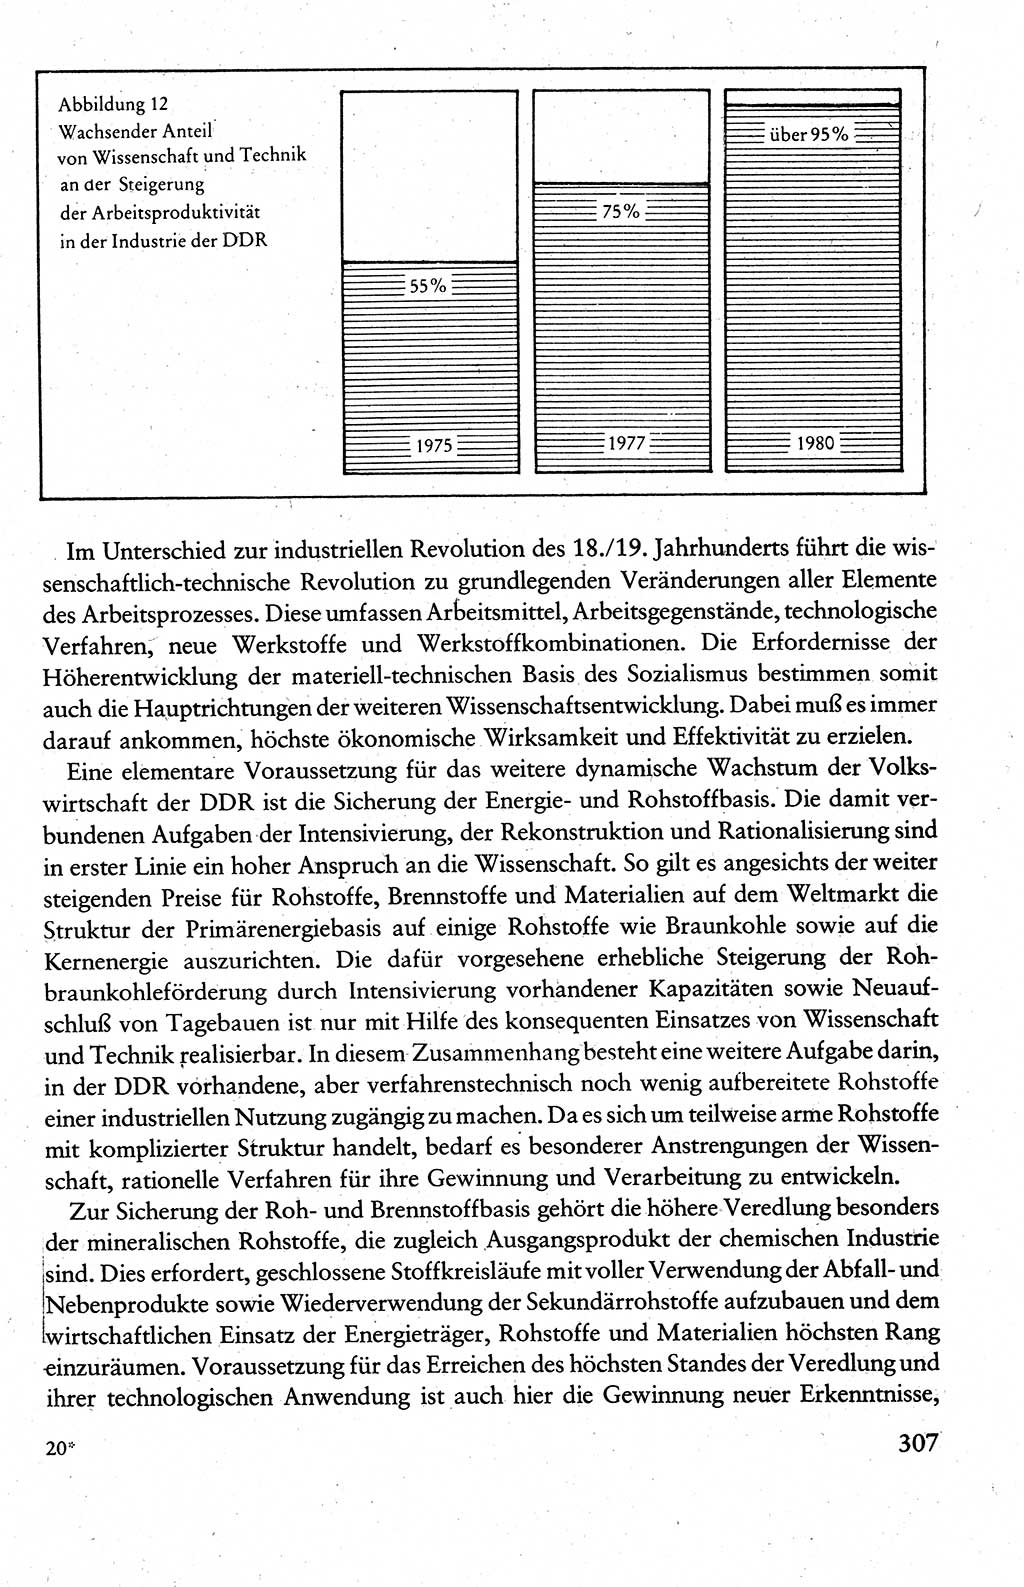 Wissenschaftlicher Kommunismus [Deutsche Demokratische Republik (DDR)], Lehrbuch für das marxistisch-leninistische Grundlagenstudium 1983, Seite 307 (Wiss. Komm. DDR Lb. 1983, S. 307)